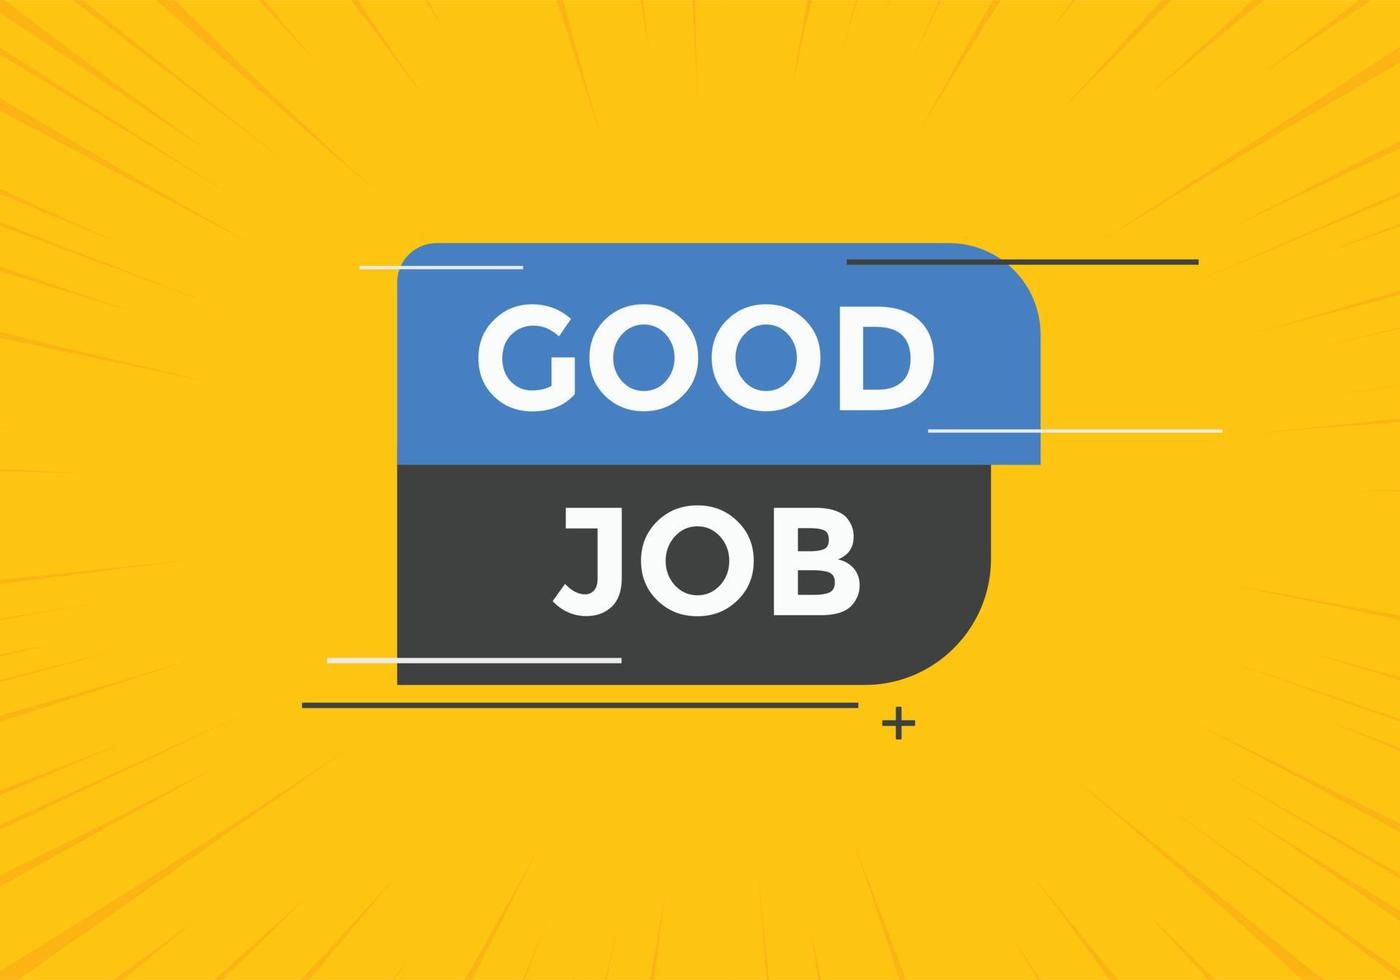 Schaltfläche "Gute Arbeit". gute Job-Text-Web-Banner-Vorlage. Zeichen-Symbol-Banner vektor